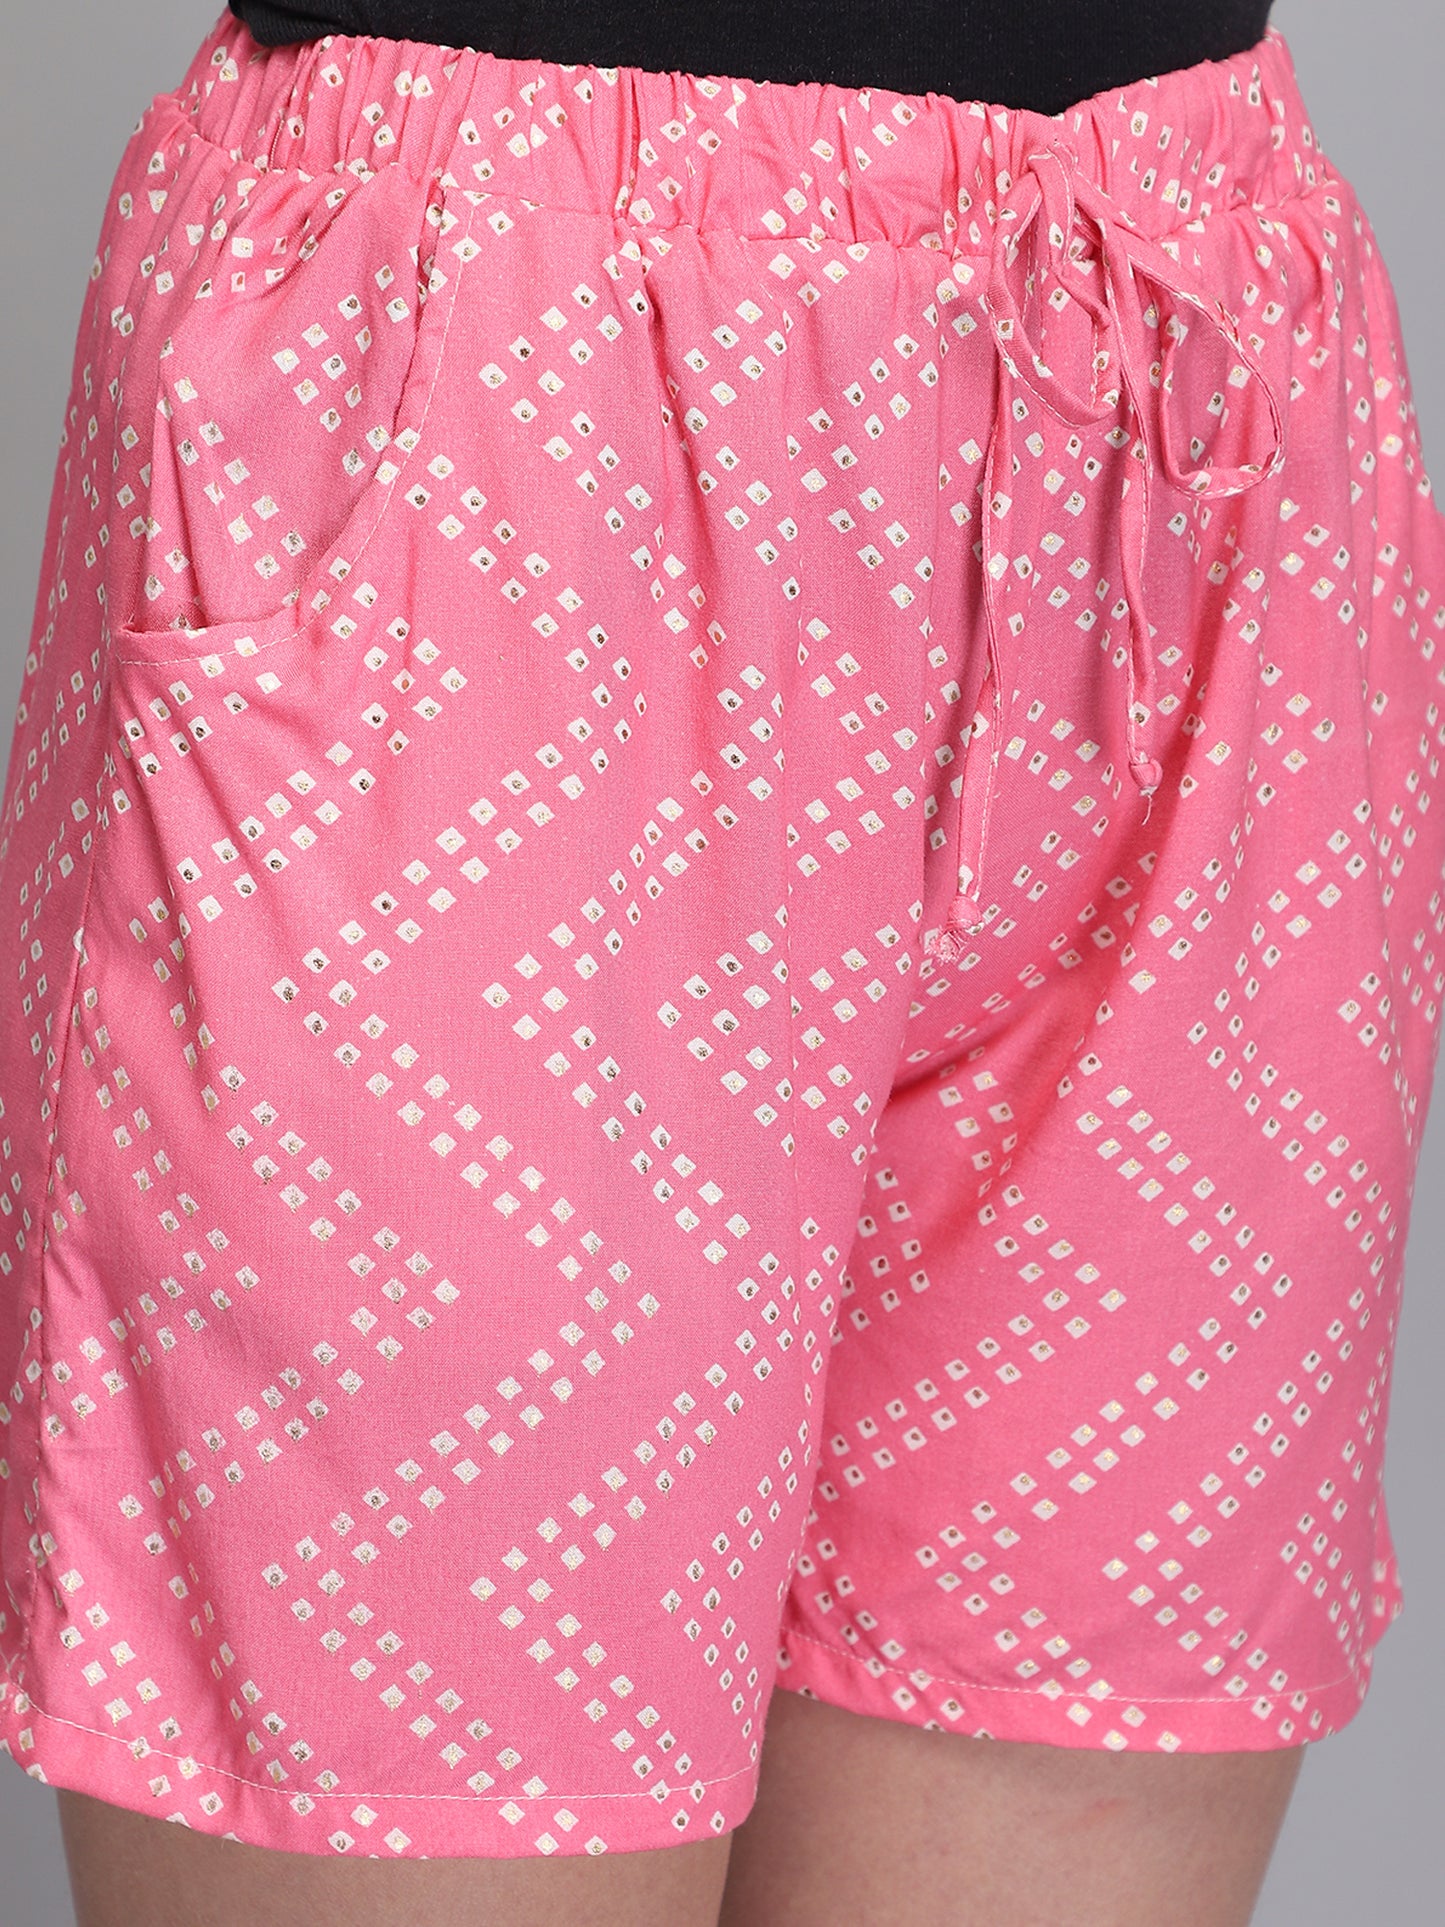 Pink printed rayon shorts